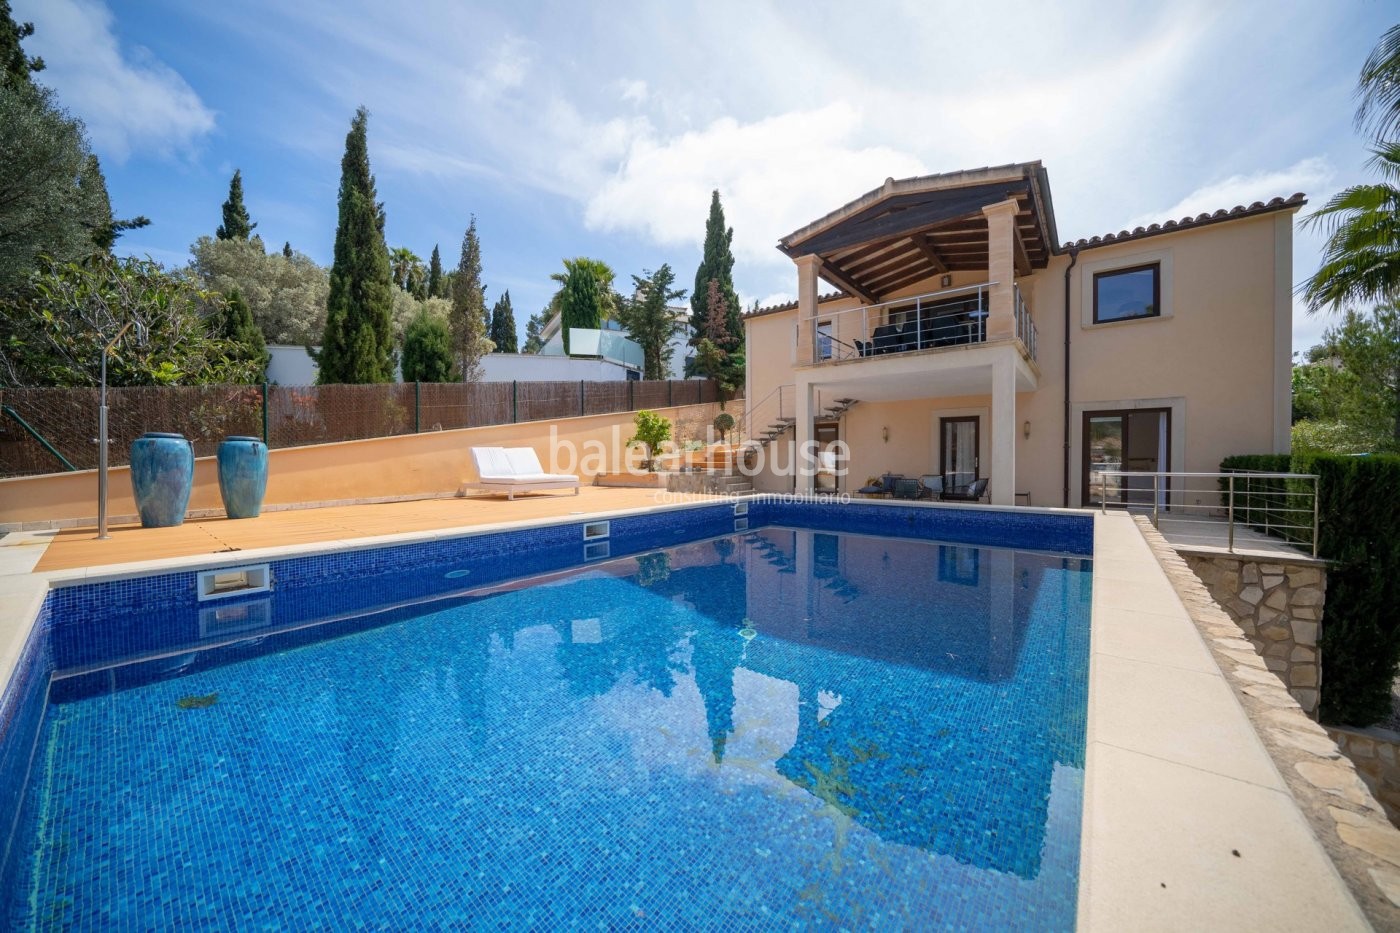 Villa de elegante y moderna arquitectura mediterránea en Santa Ponsa con vistas hasta el mar